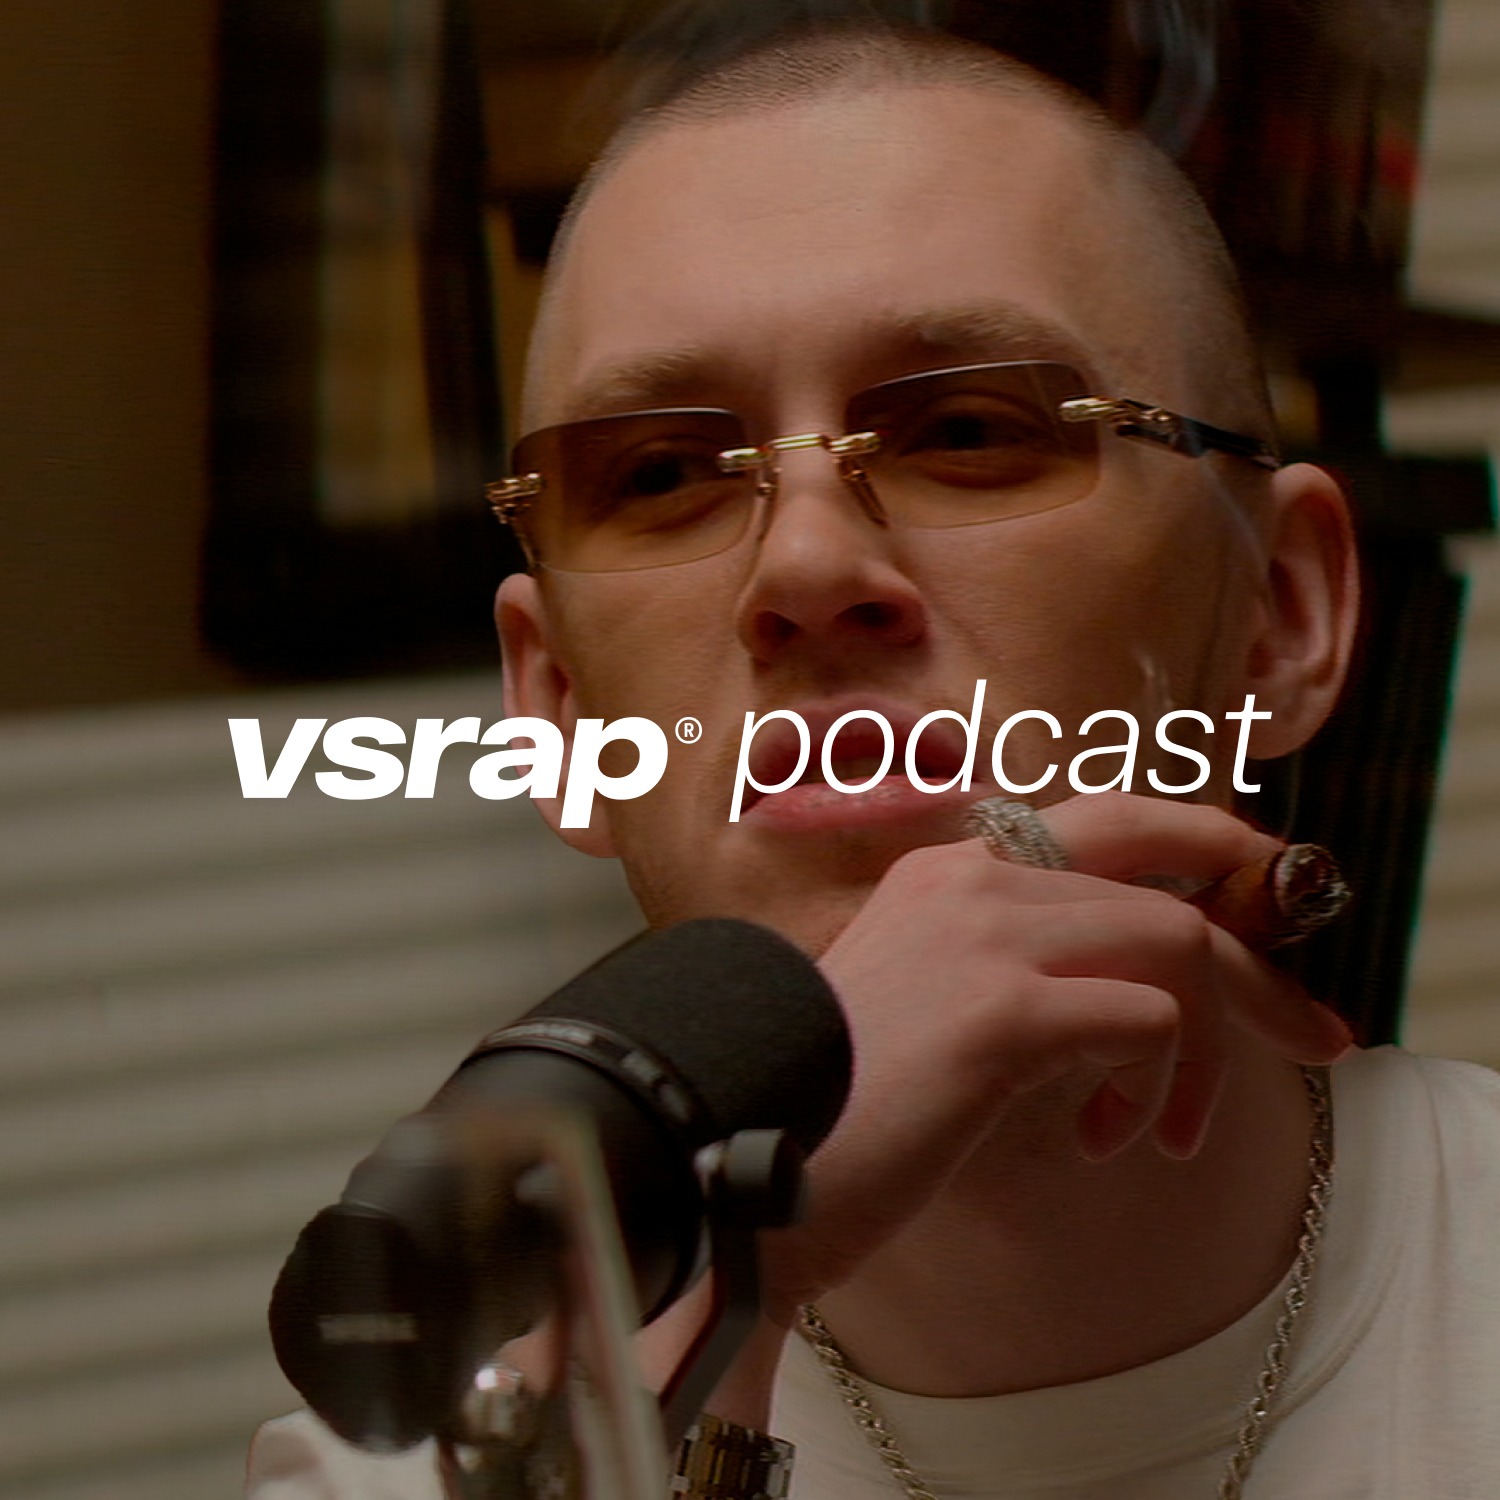 VSRAP Podcast - Big Baby Tape